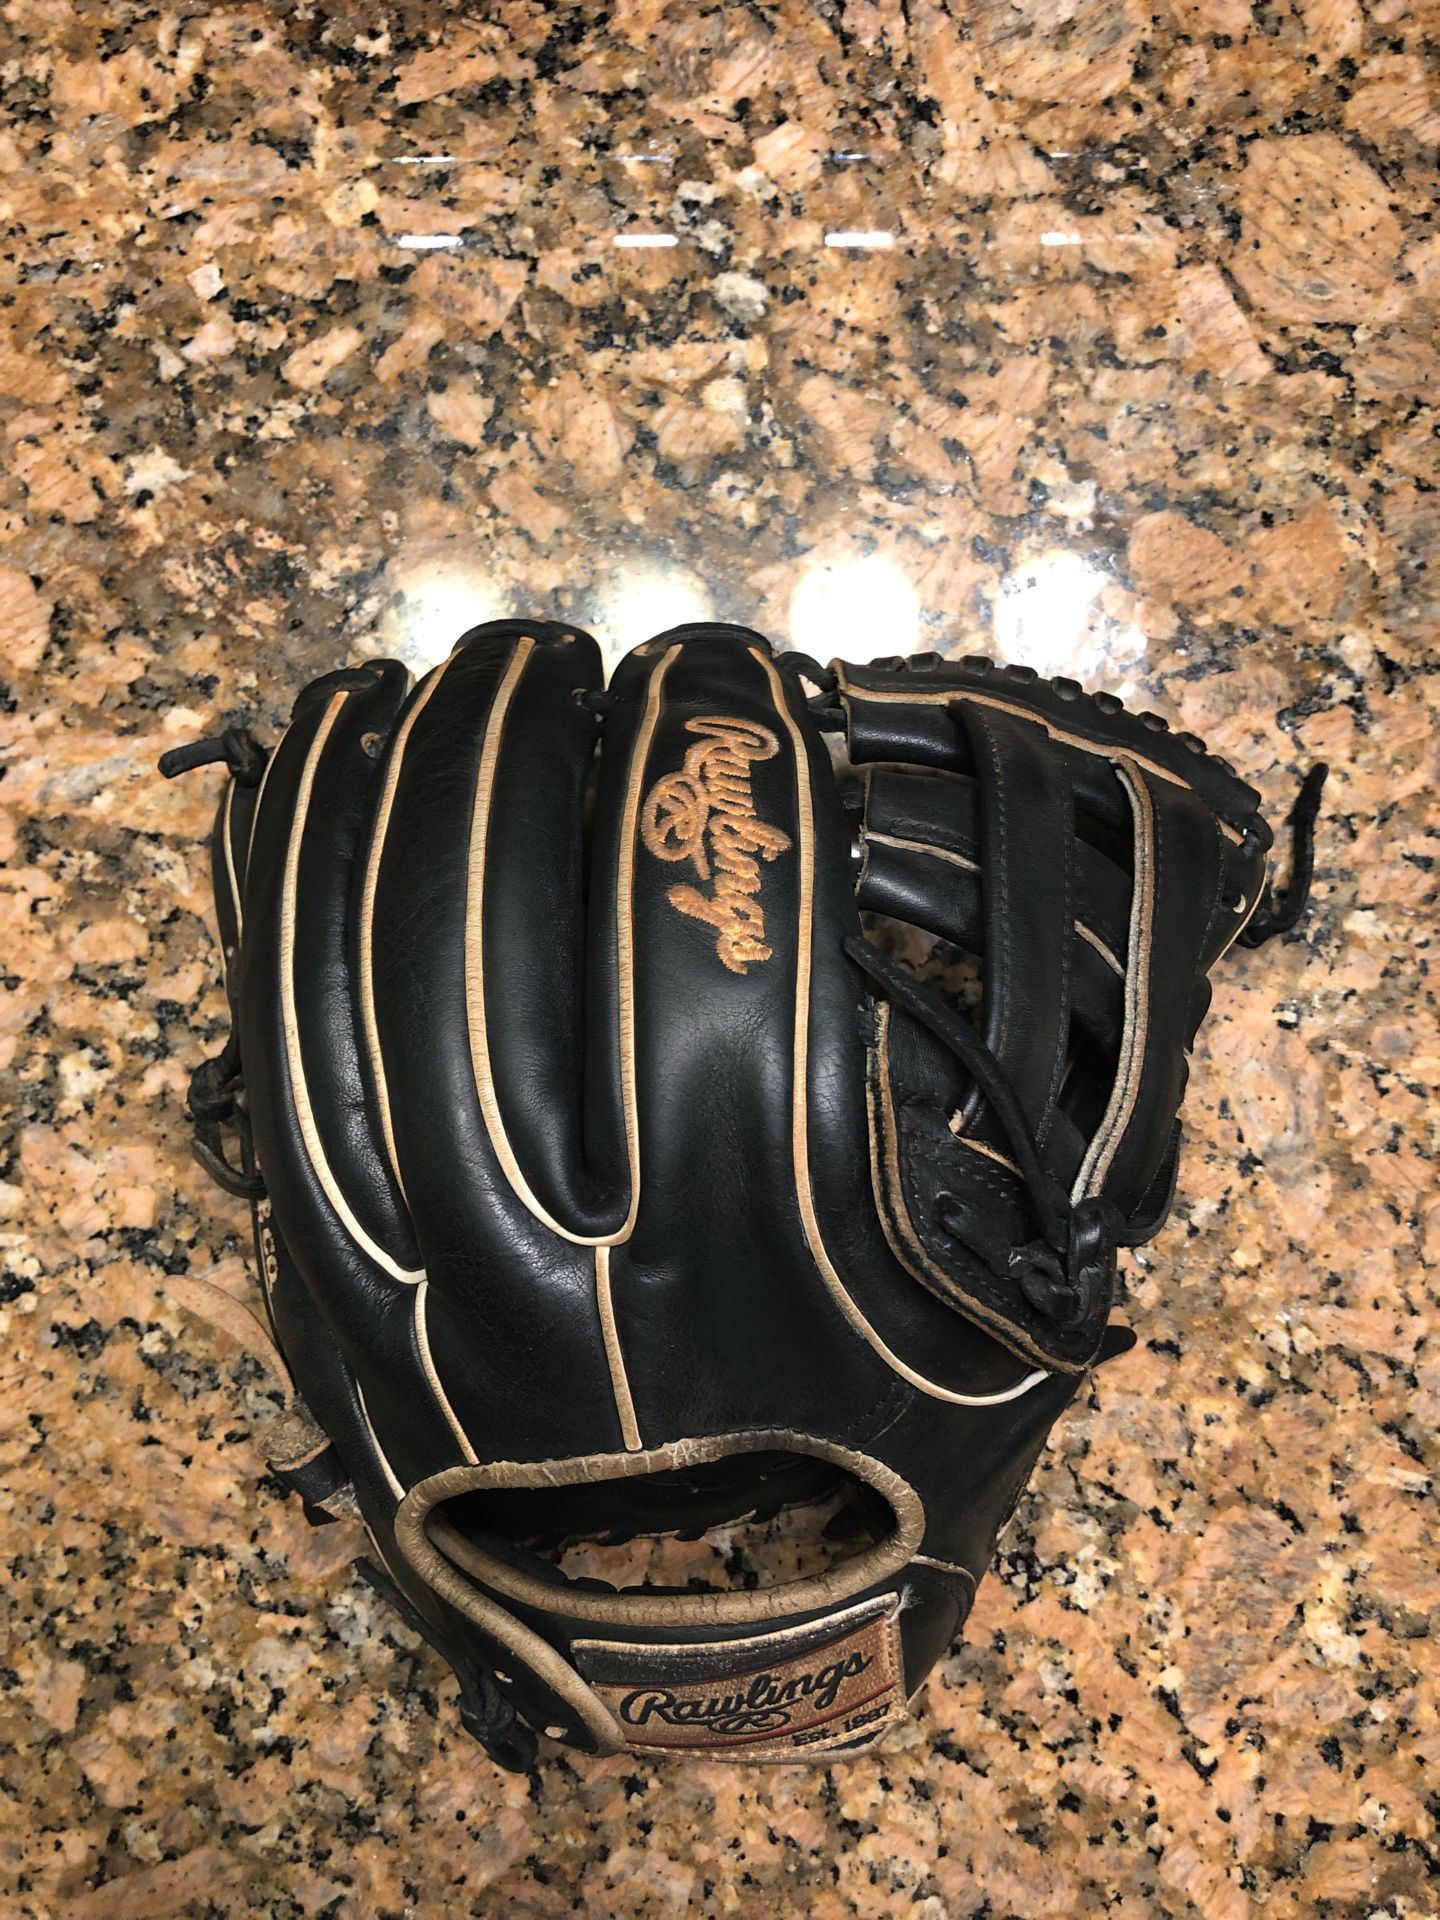 Baseball glove, Rawlings heart of the hide, 11.75